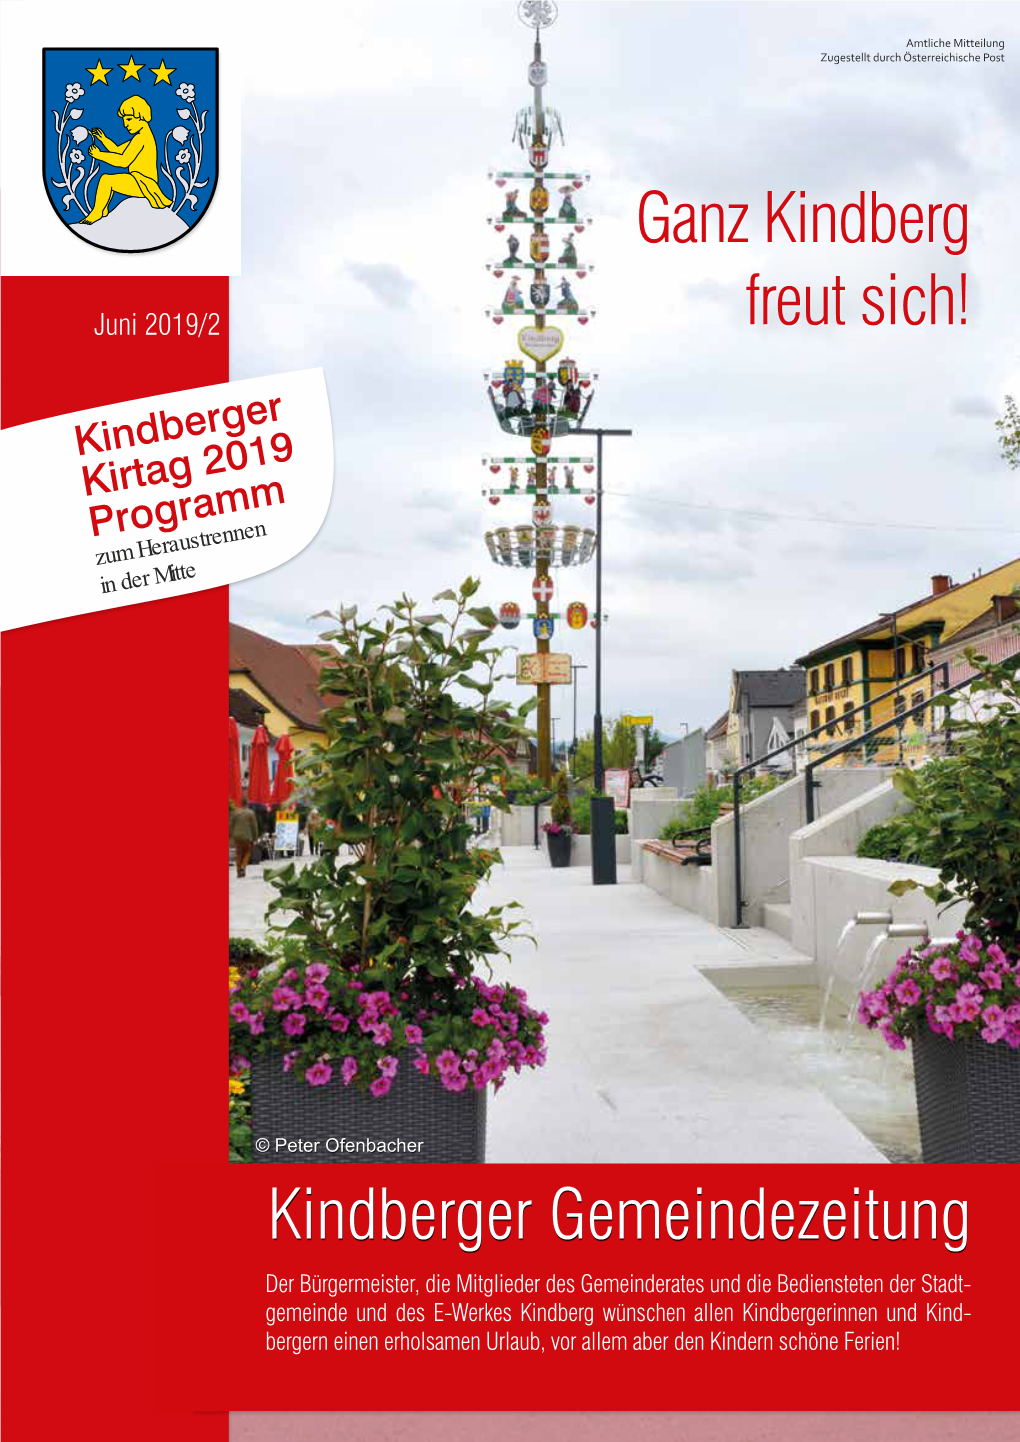 Kindberger Gemeindezeitung